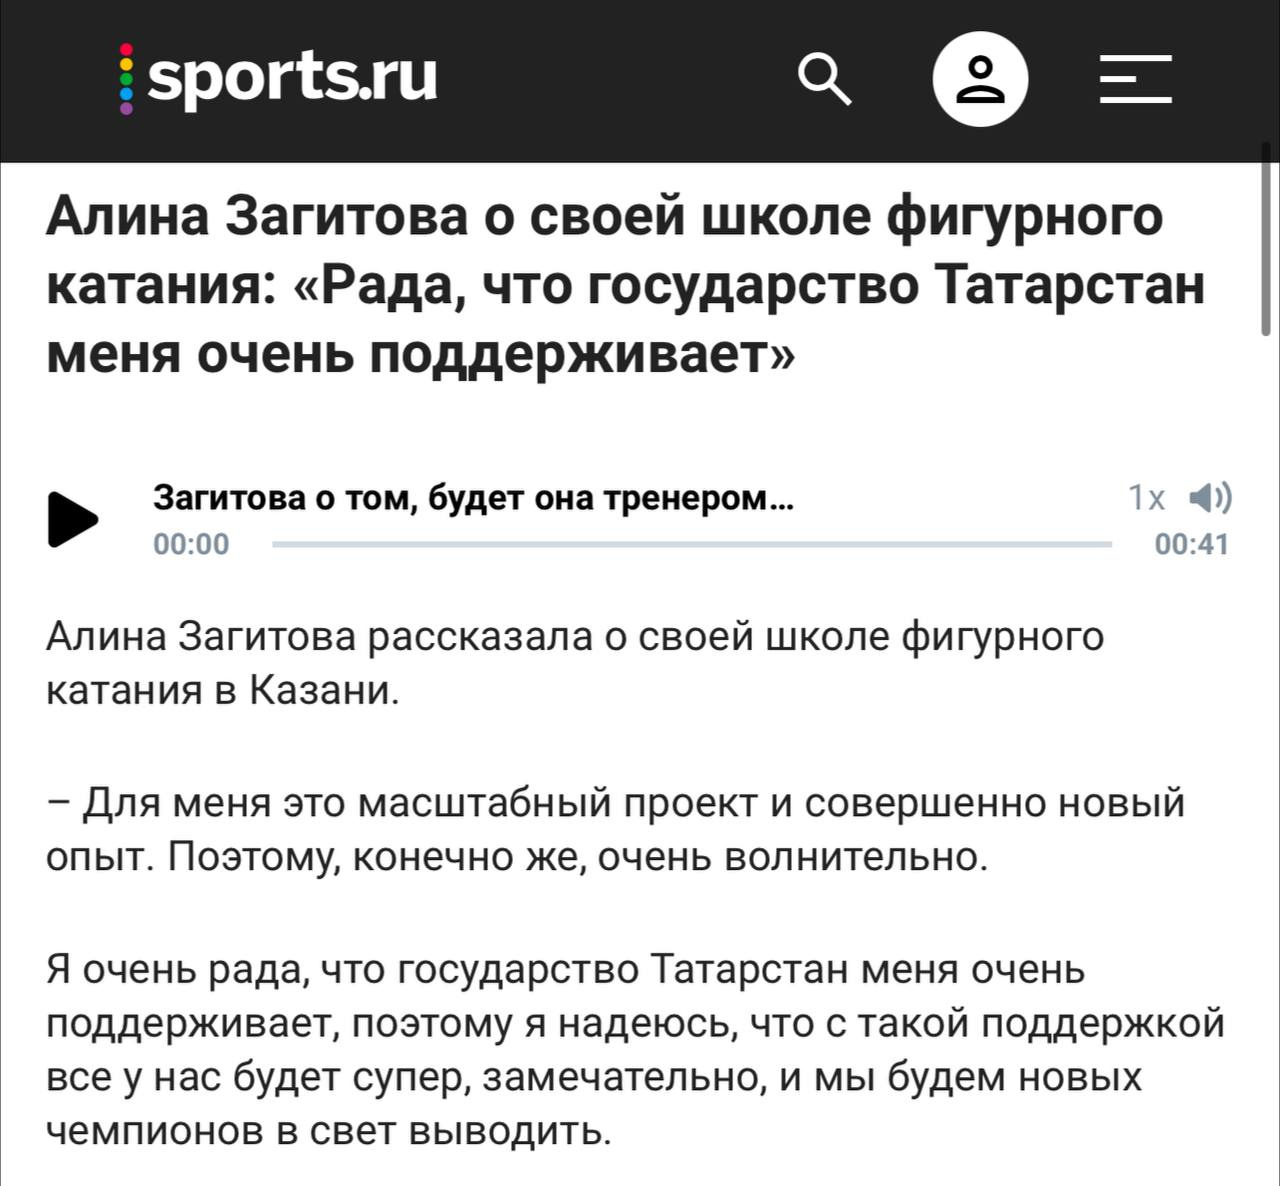 Слова Загитовой быстро разлетелись по спортивным СМИ